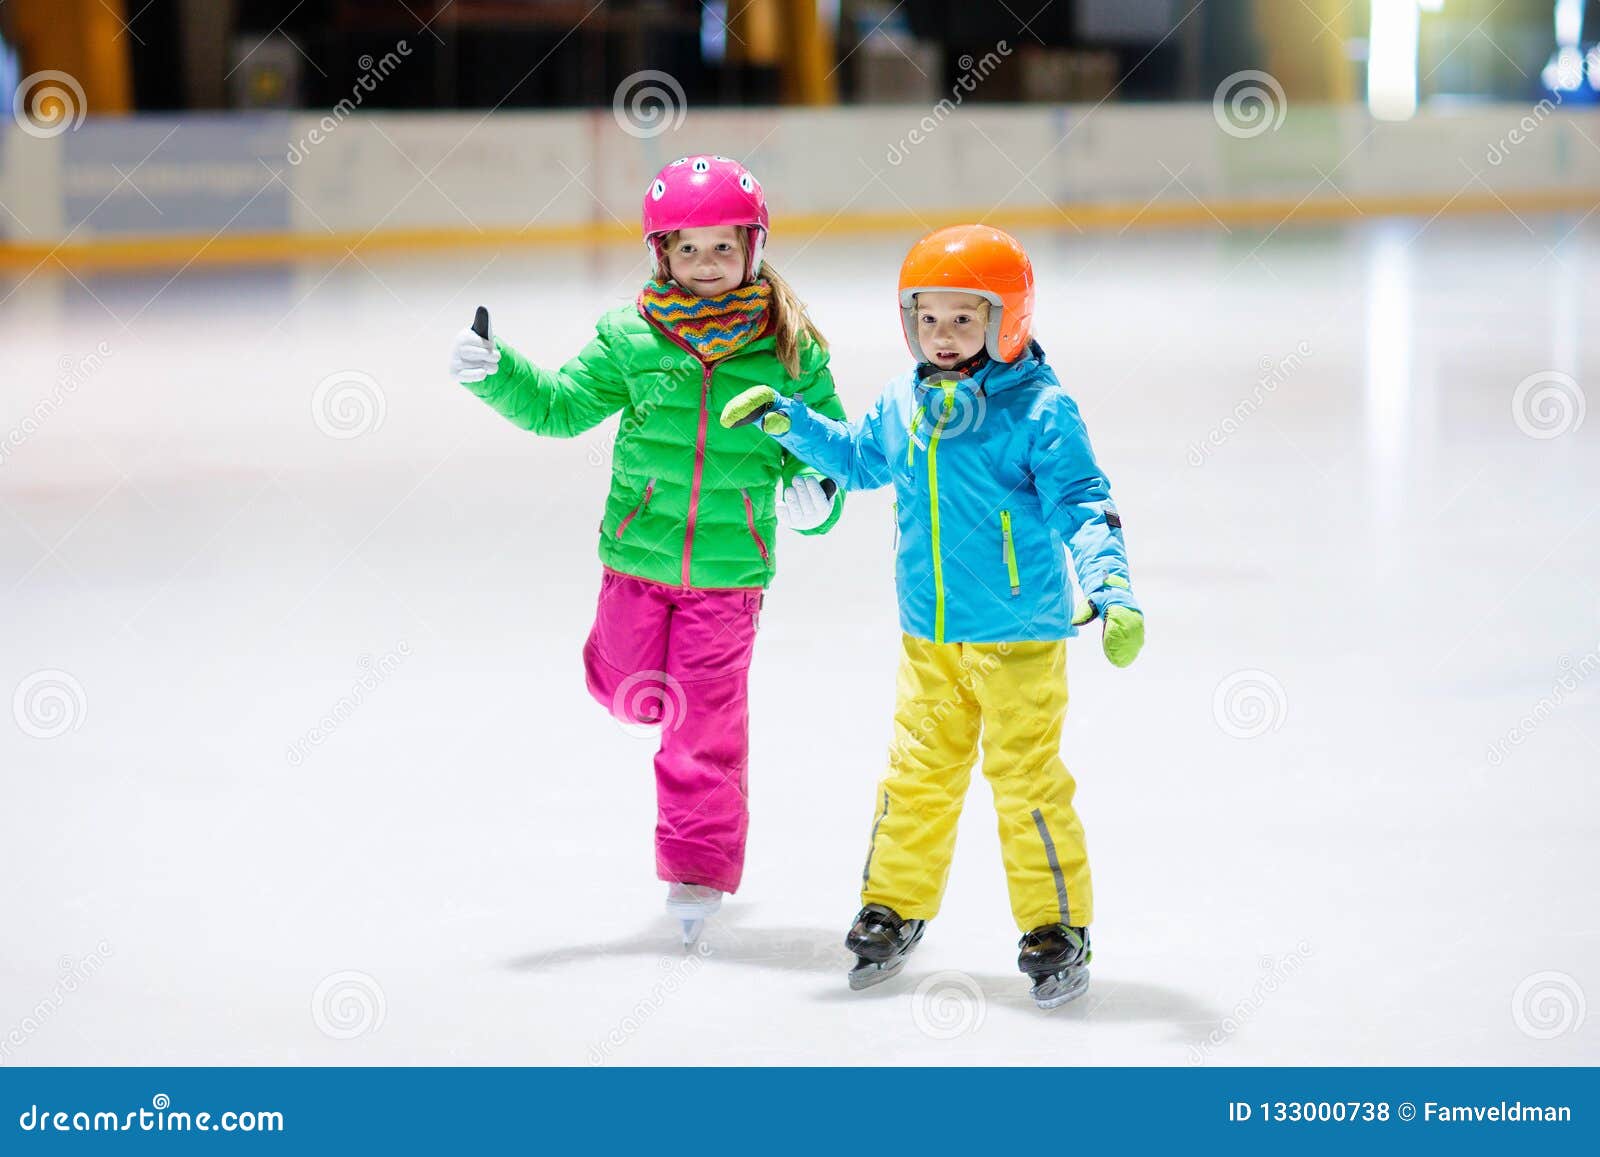 child skating on indoor ice rink. kids skate